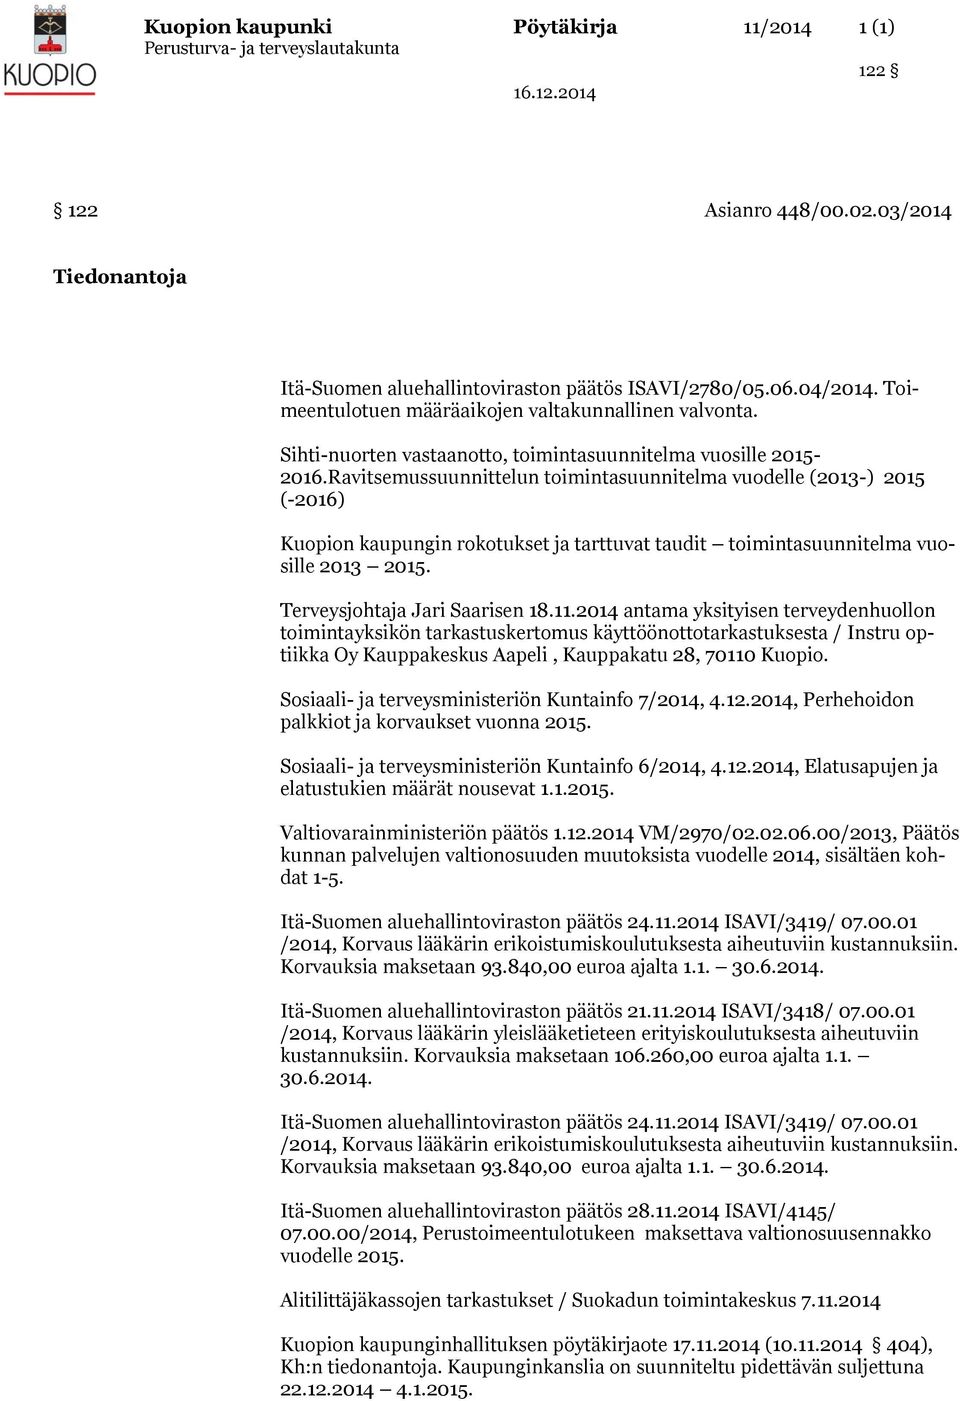 Ravitsemussuunnittelun toimintasuunnitelma vuodelle (2013-) 2015 (-2016) Kuopion kaupungin rokotukset ja tarttuvat taudit toimintasuunnitelma vuosille 2013 2015. Terveysjohtaja Jari Saarisen 18.11.